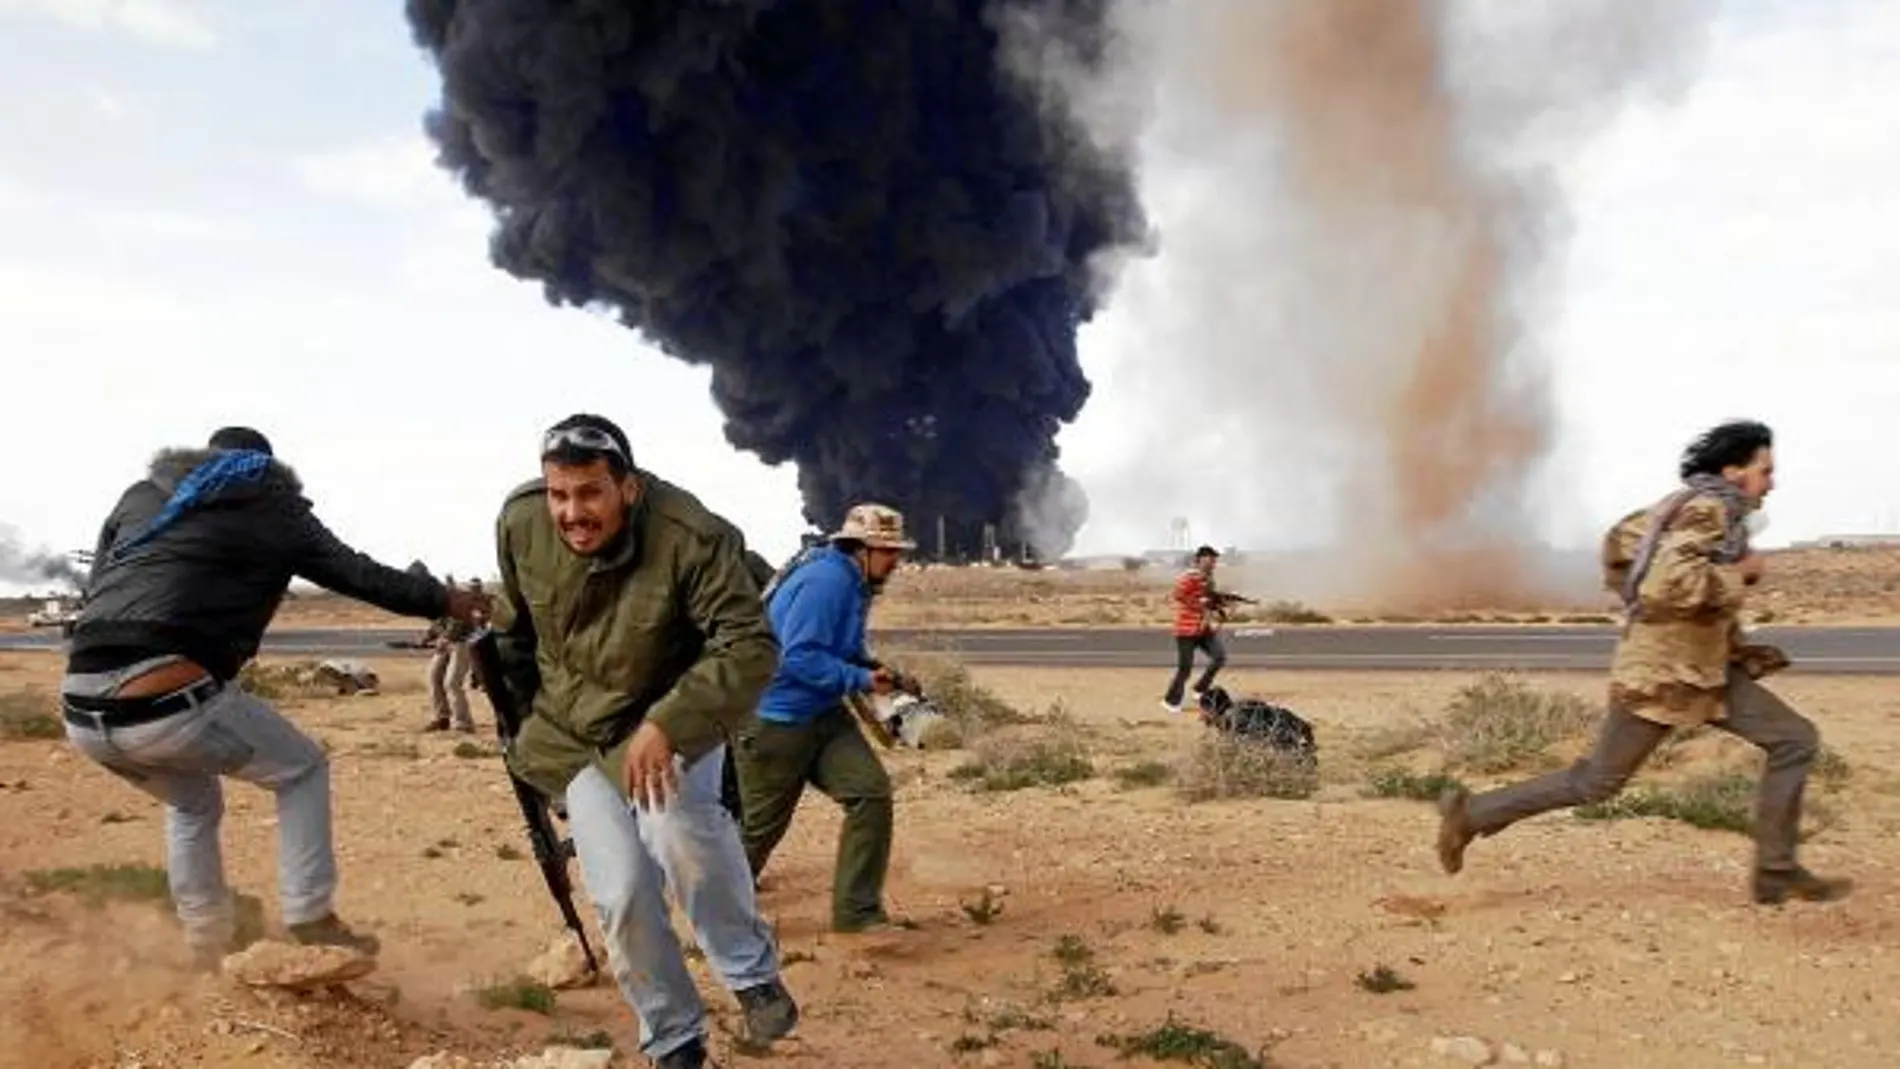 El enclave petrolero de Ras Lanuf, a unos 350 kilómetros al este de Bengasi, sufrió ayer los bombardeos de la aviación de Gadafi. Un ataque que fue contestado de inmediato por las baterías antiaéreas de los rebeldes